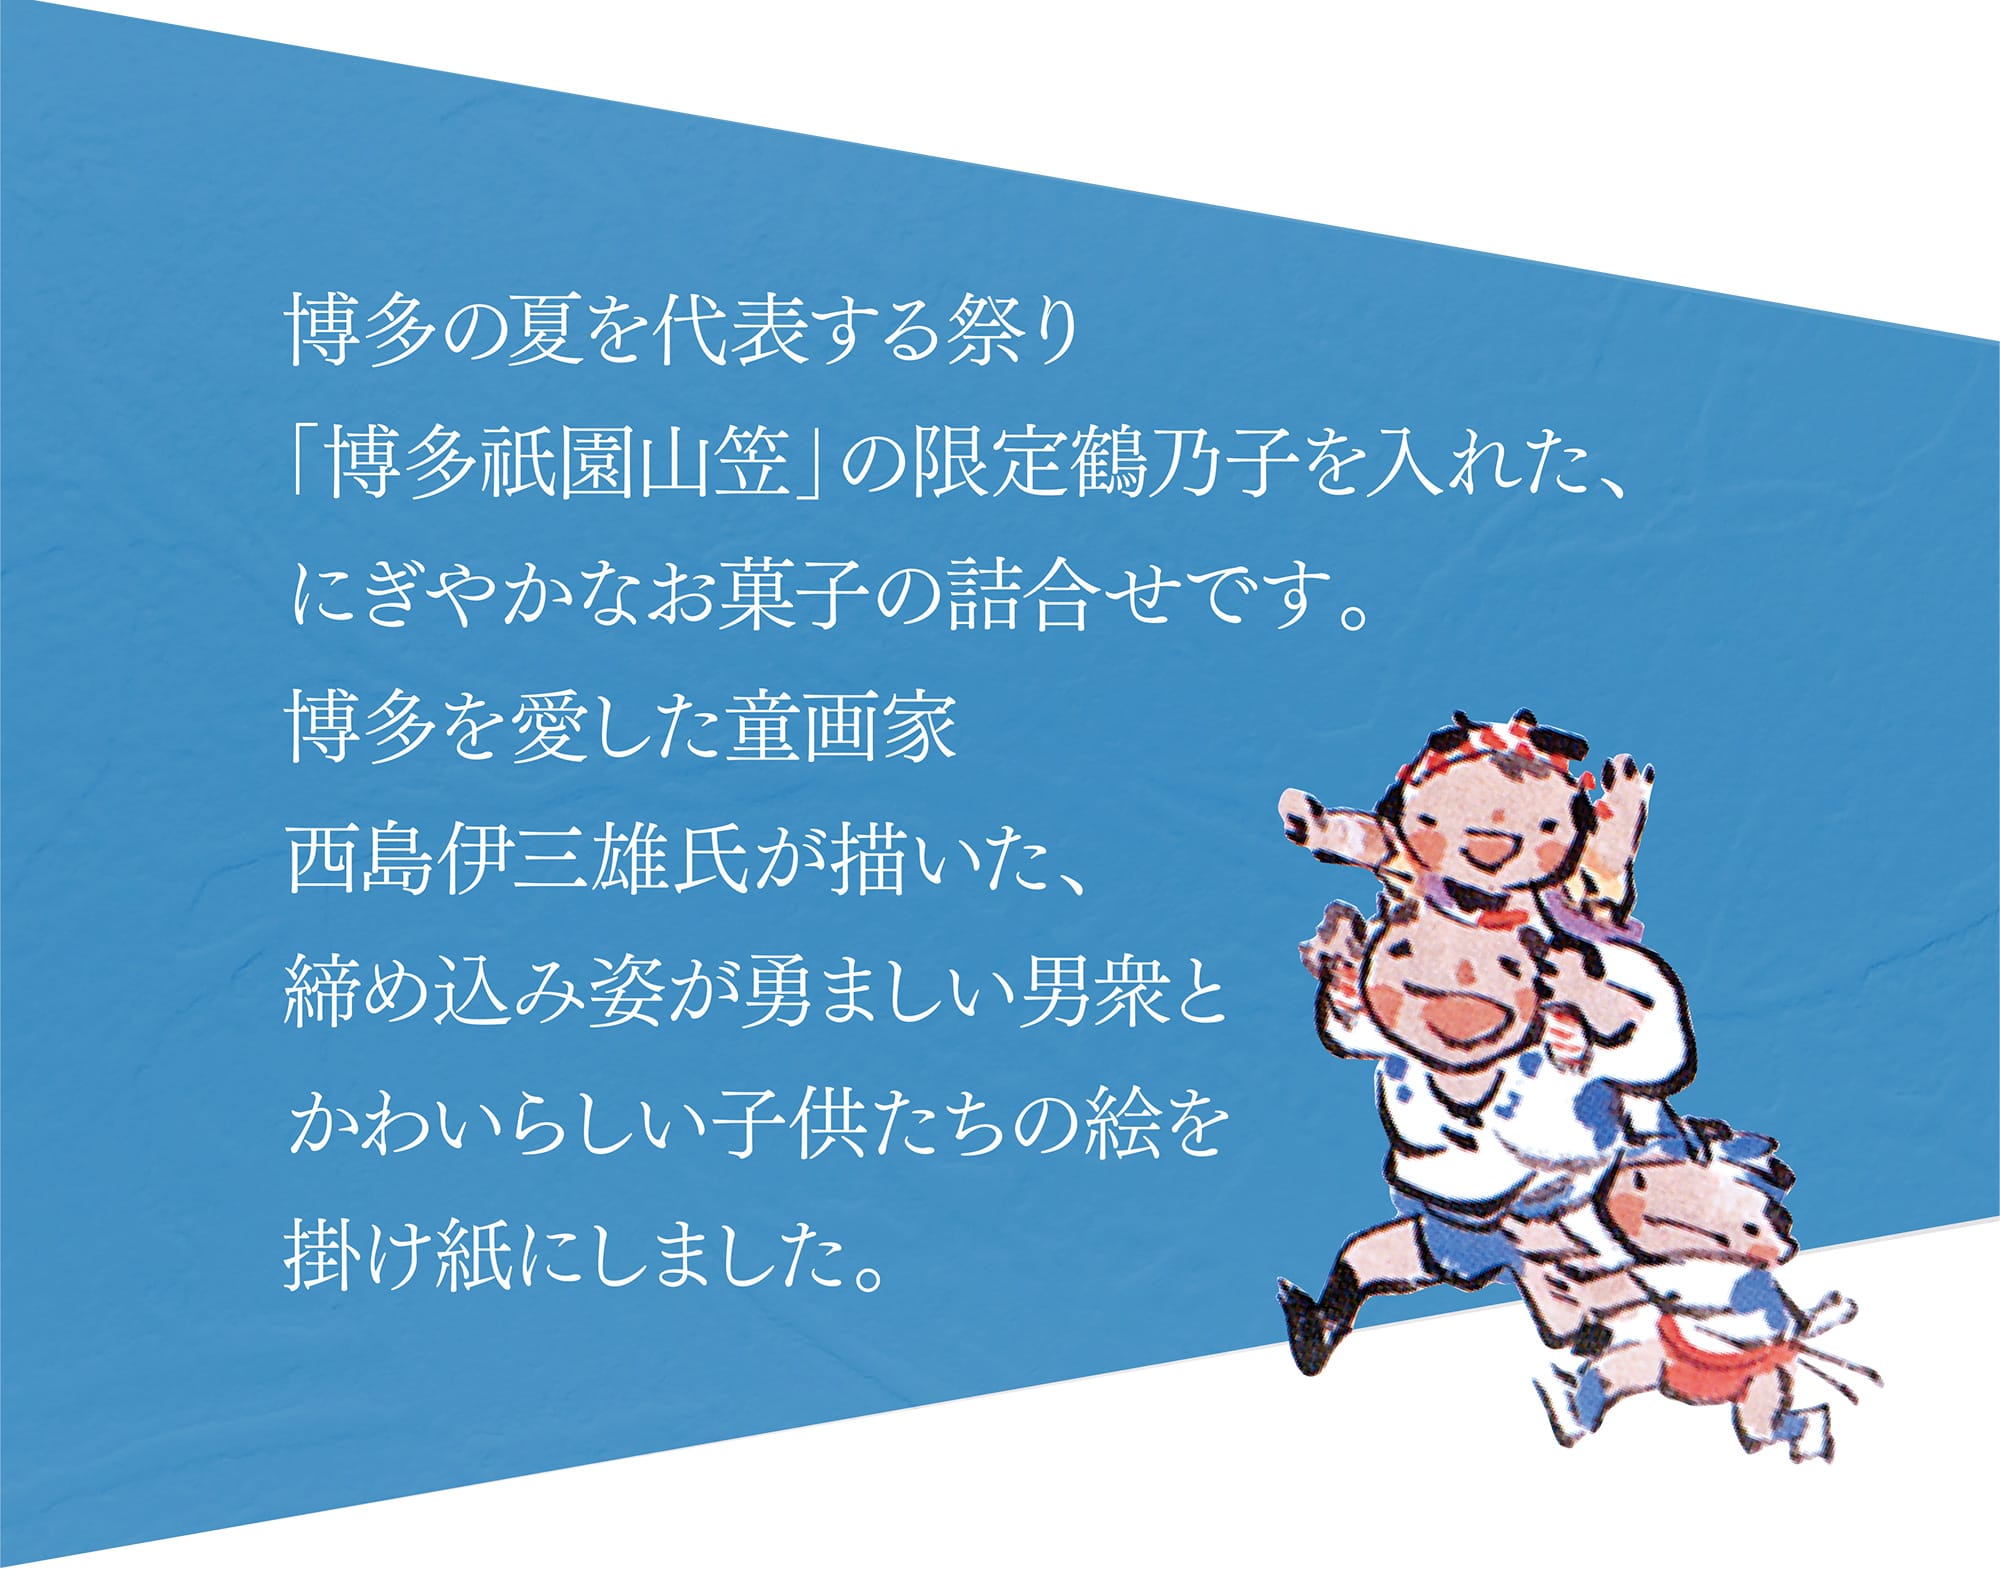 博多の夏を代表する祭り「博多祇園山笠」の限定鶴乃子を入れた、にぎやかなお菓子の詰合せです。博多を愛した童画家西島伊三雄氏が描いた、締め込み姿が勇ましい男衆とかわいらしい子供たちの絵を掛け紙にしました。